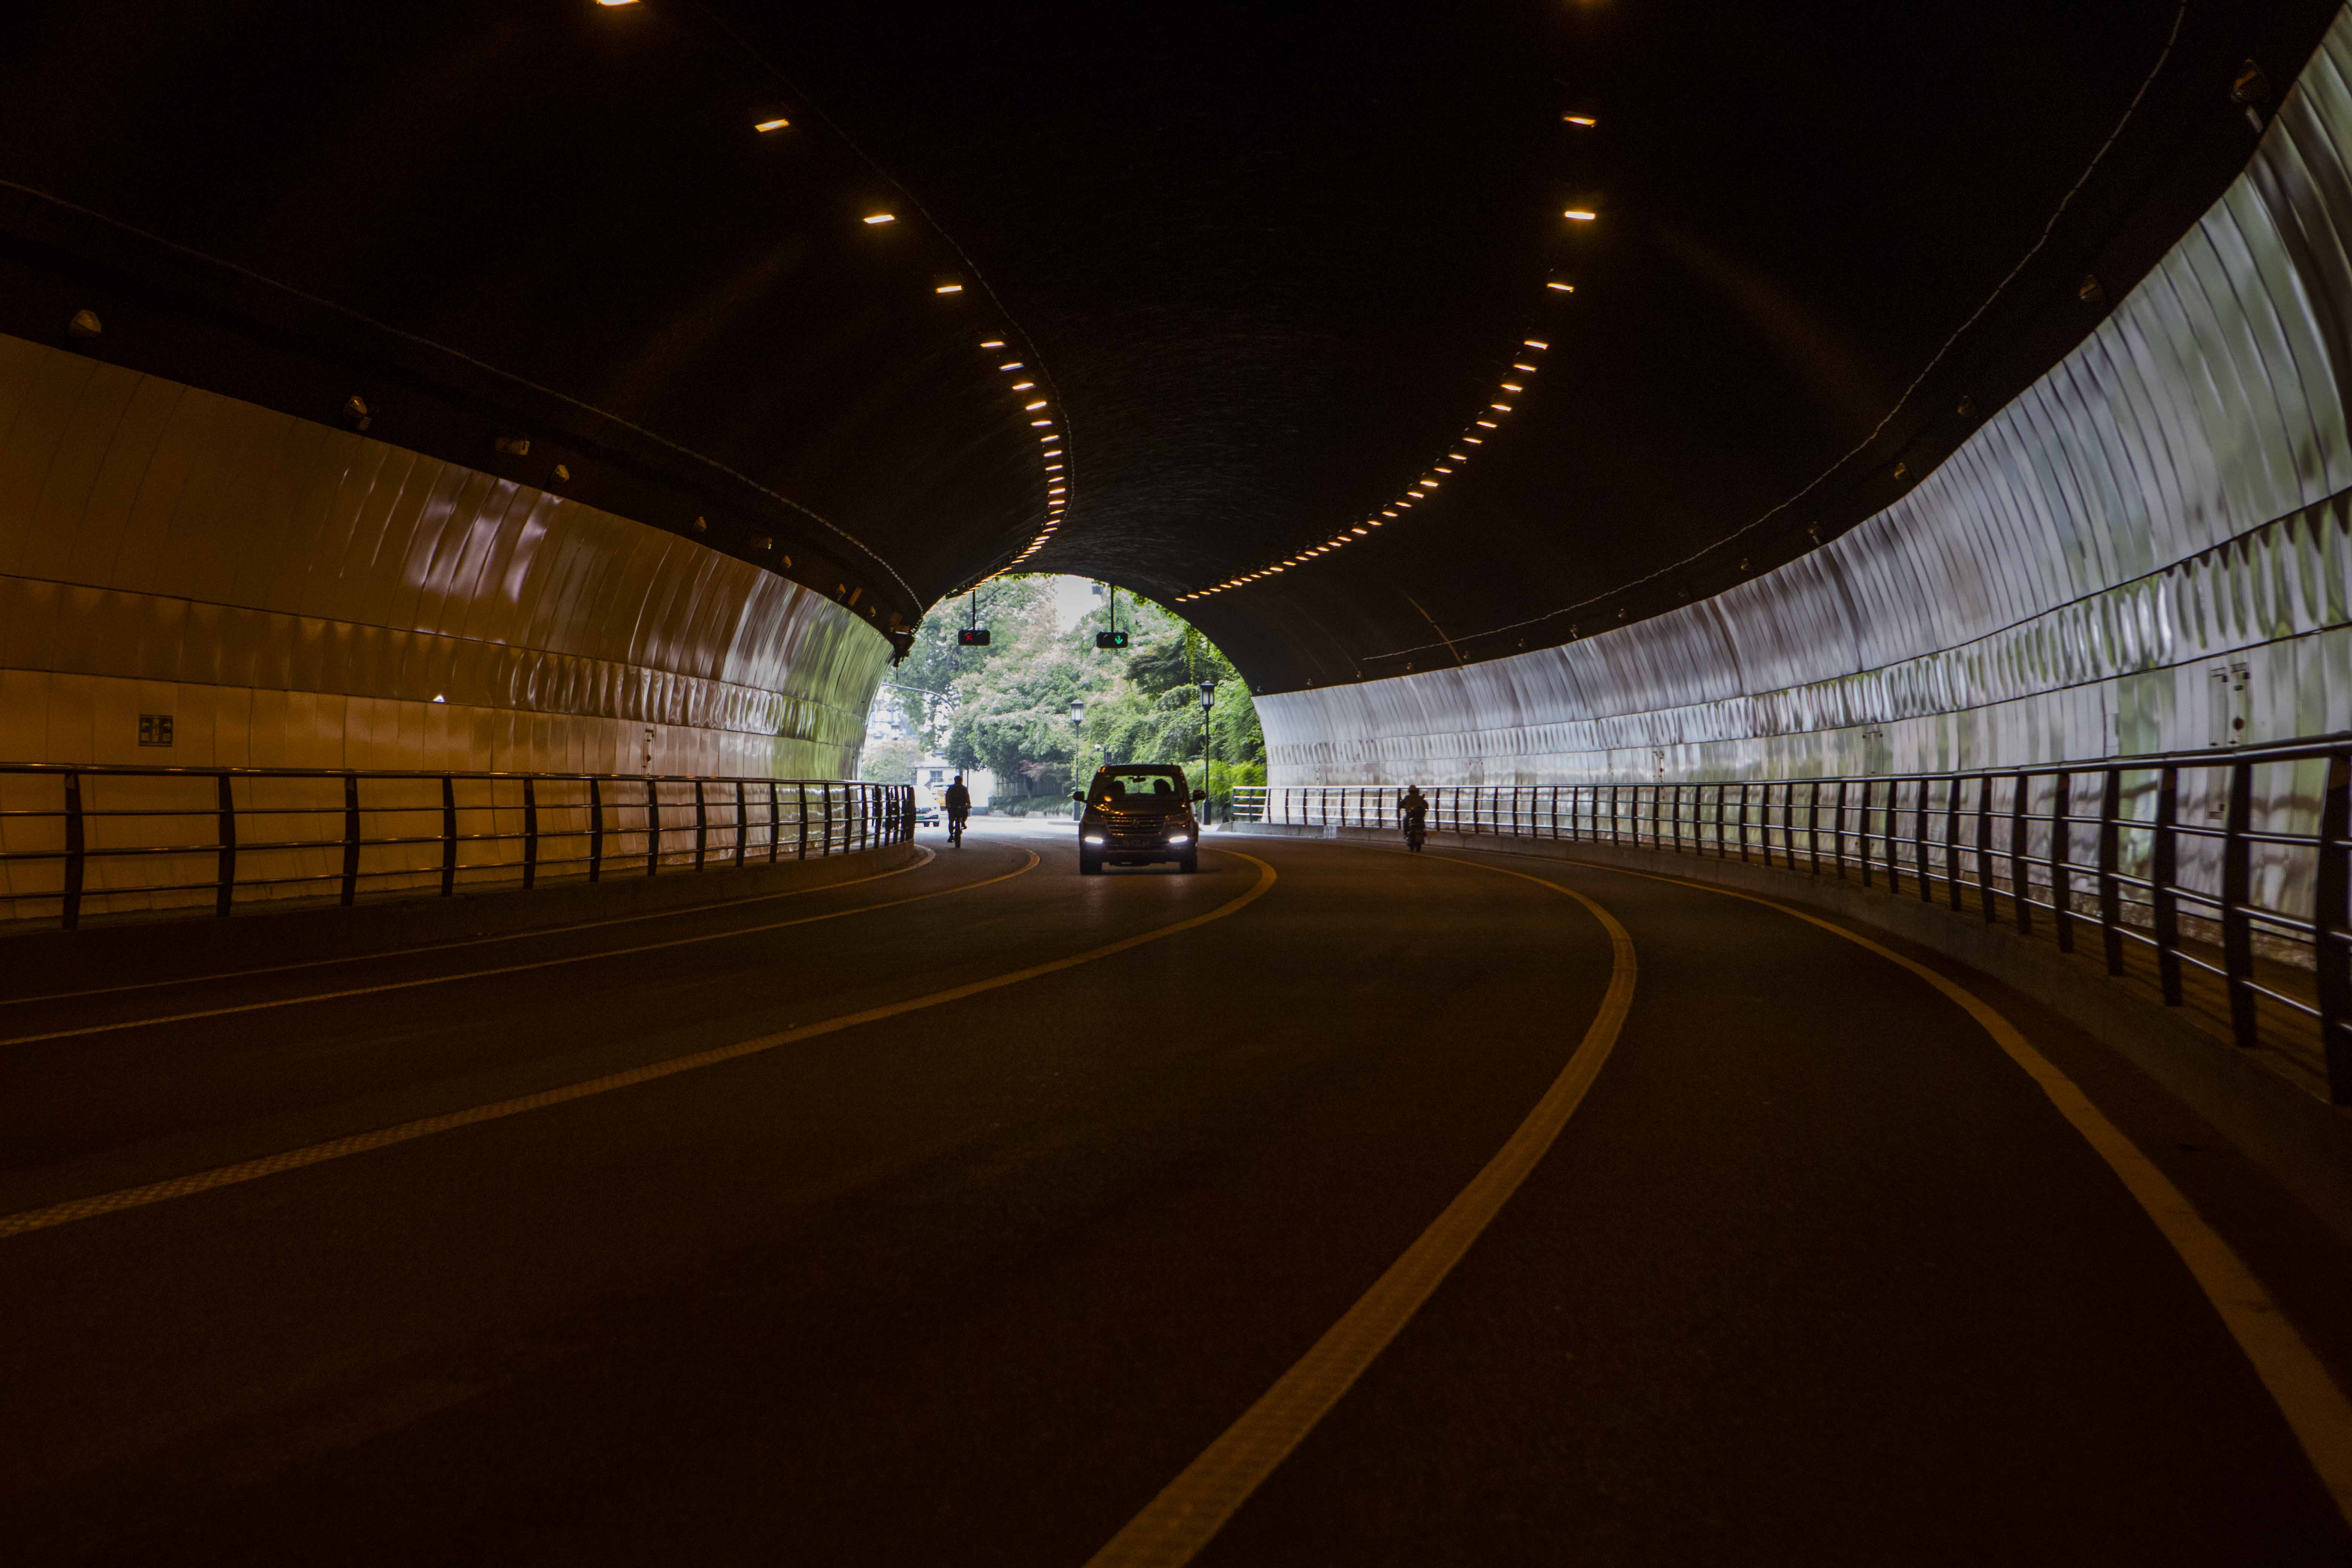 杭州万松岭隧道,不分白天黑夜有不少人来拍婚纱照,写真